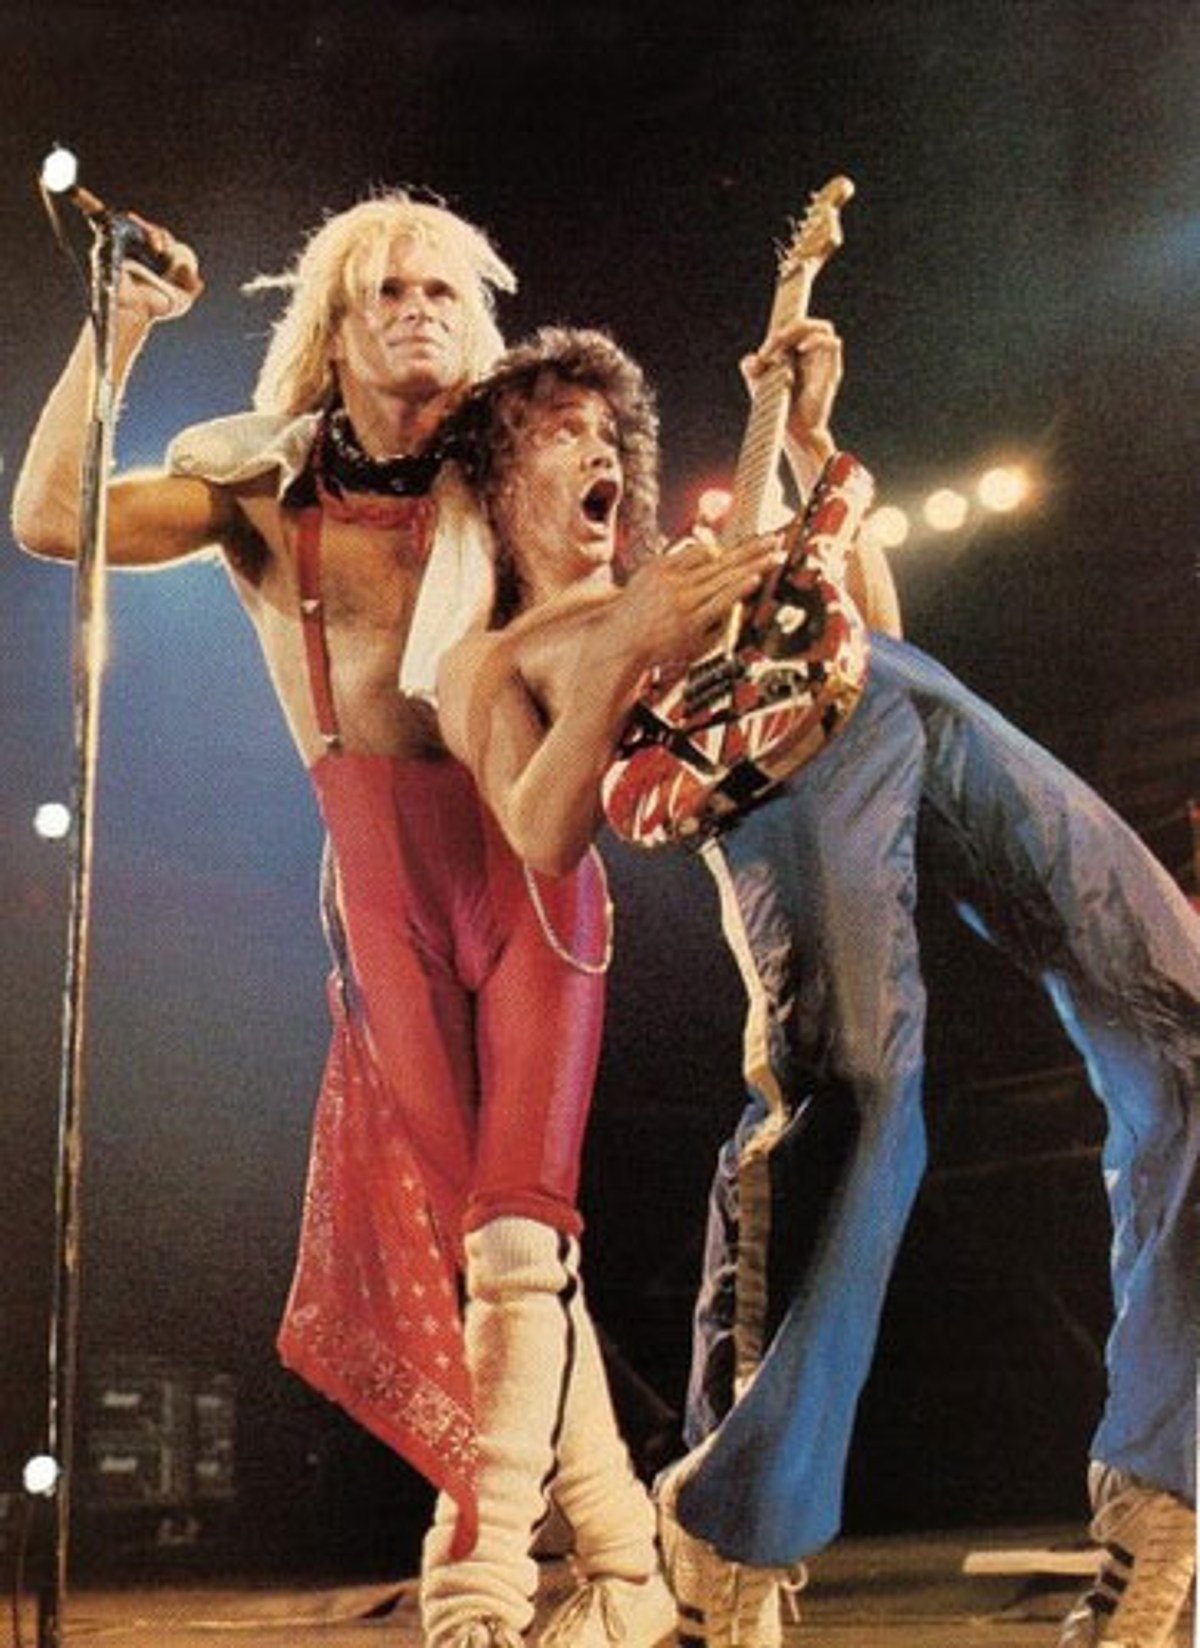 Van Halen W David Lee Roth Rescheduled Tour Dates